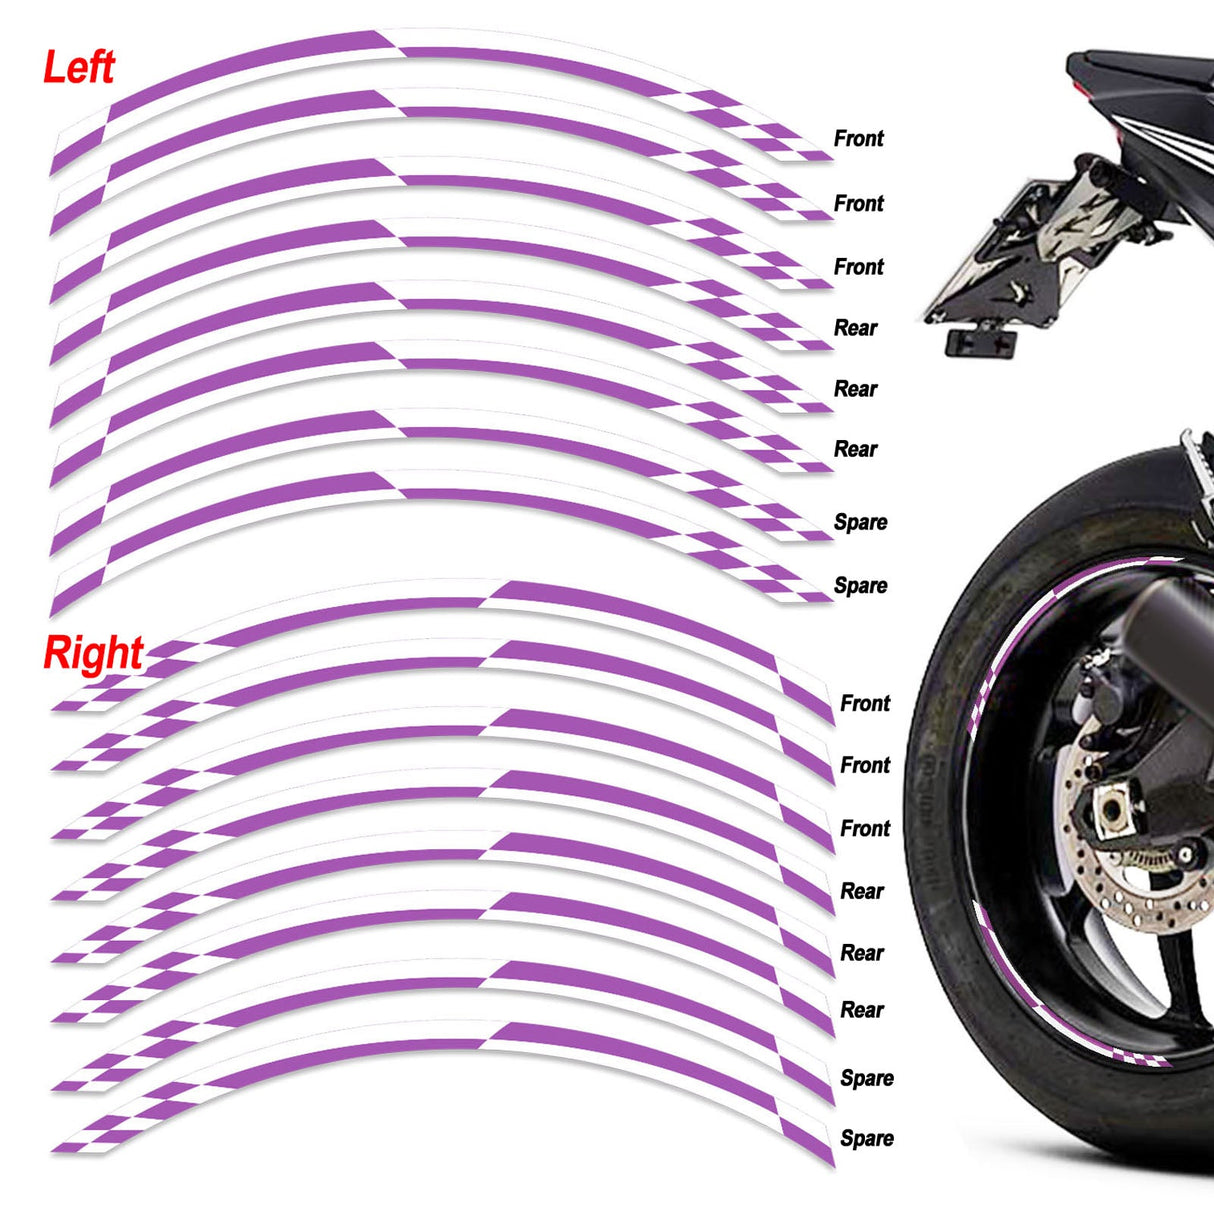 StickerBao Purple Universal 17 inch Motorcycle Check01 White Standard Edge Rim Sticker Check Rim Wheel Decal For For Aprilia